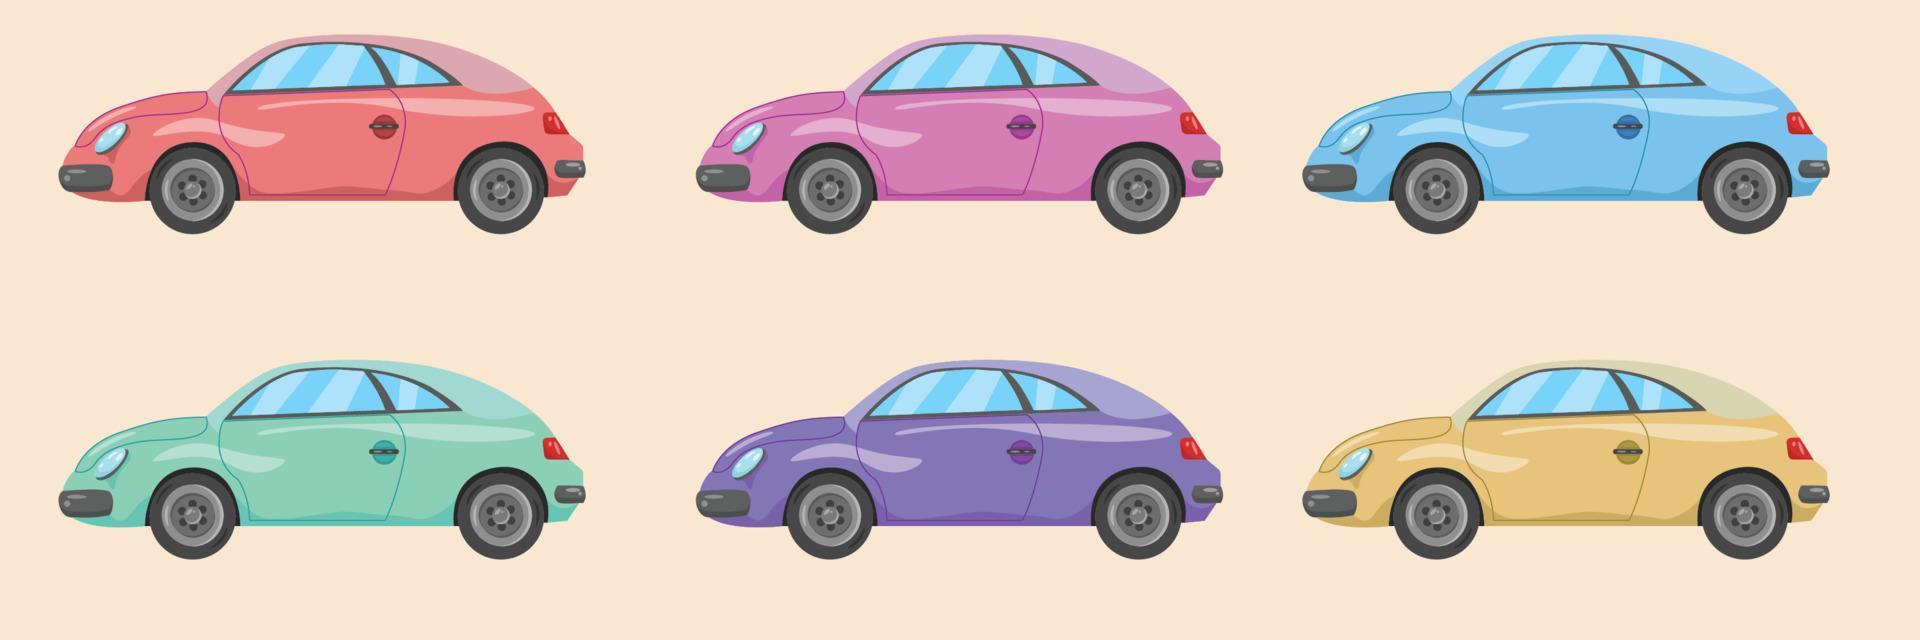 conjunto de colección de vectores de coches coloridos en estilo de diseño plano